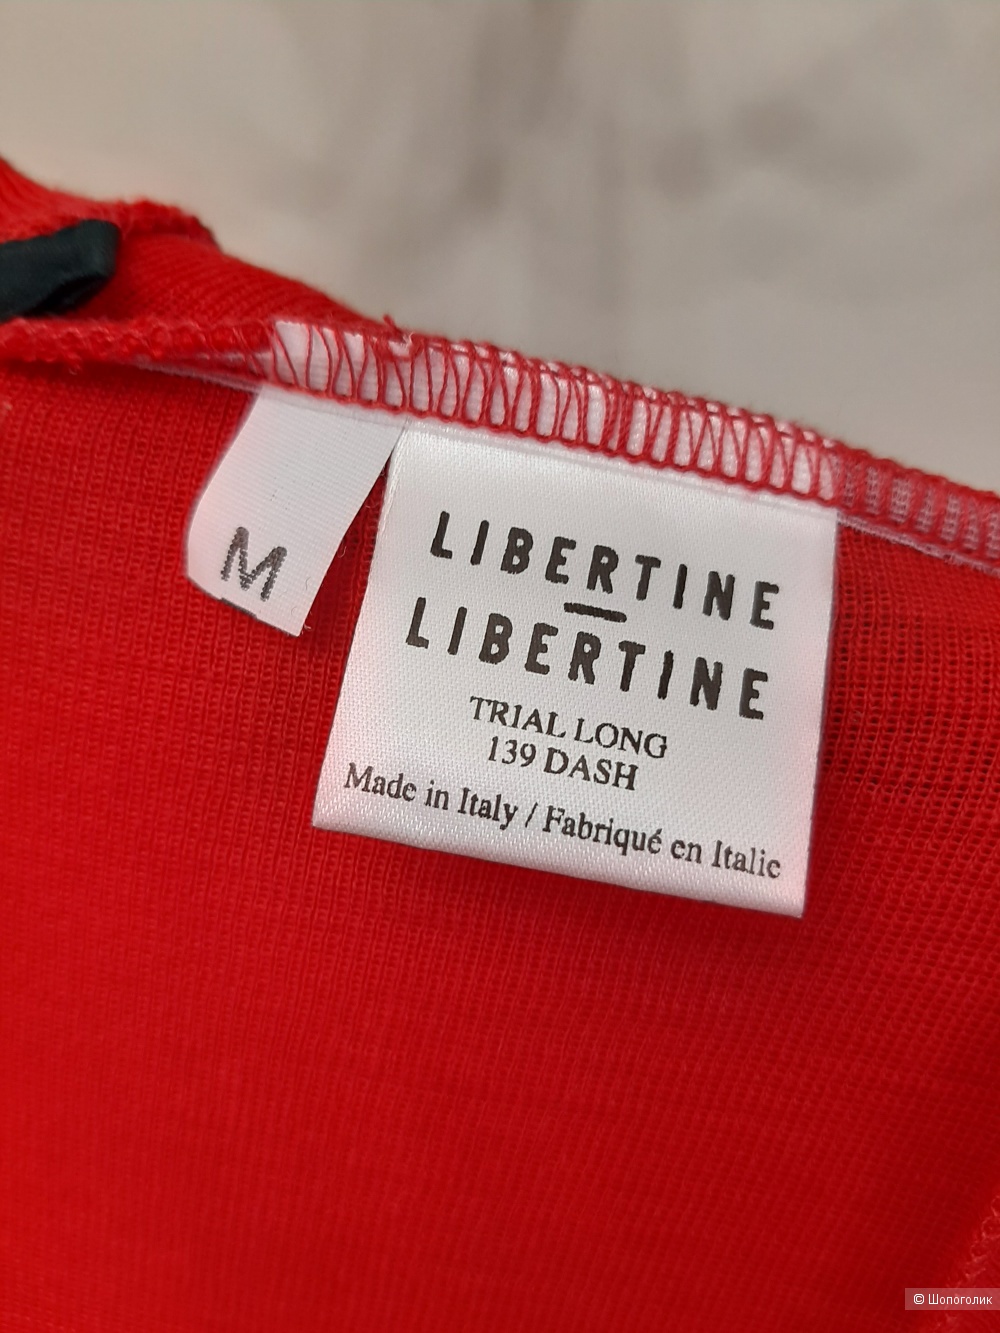 Шерстяное платье - чулок Libertine-Libertine S/M